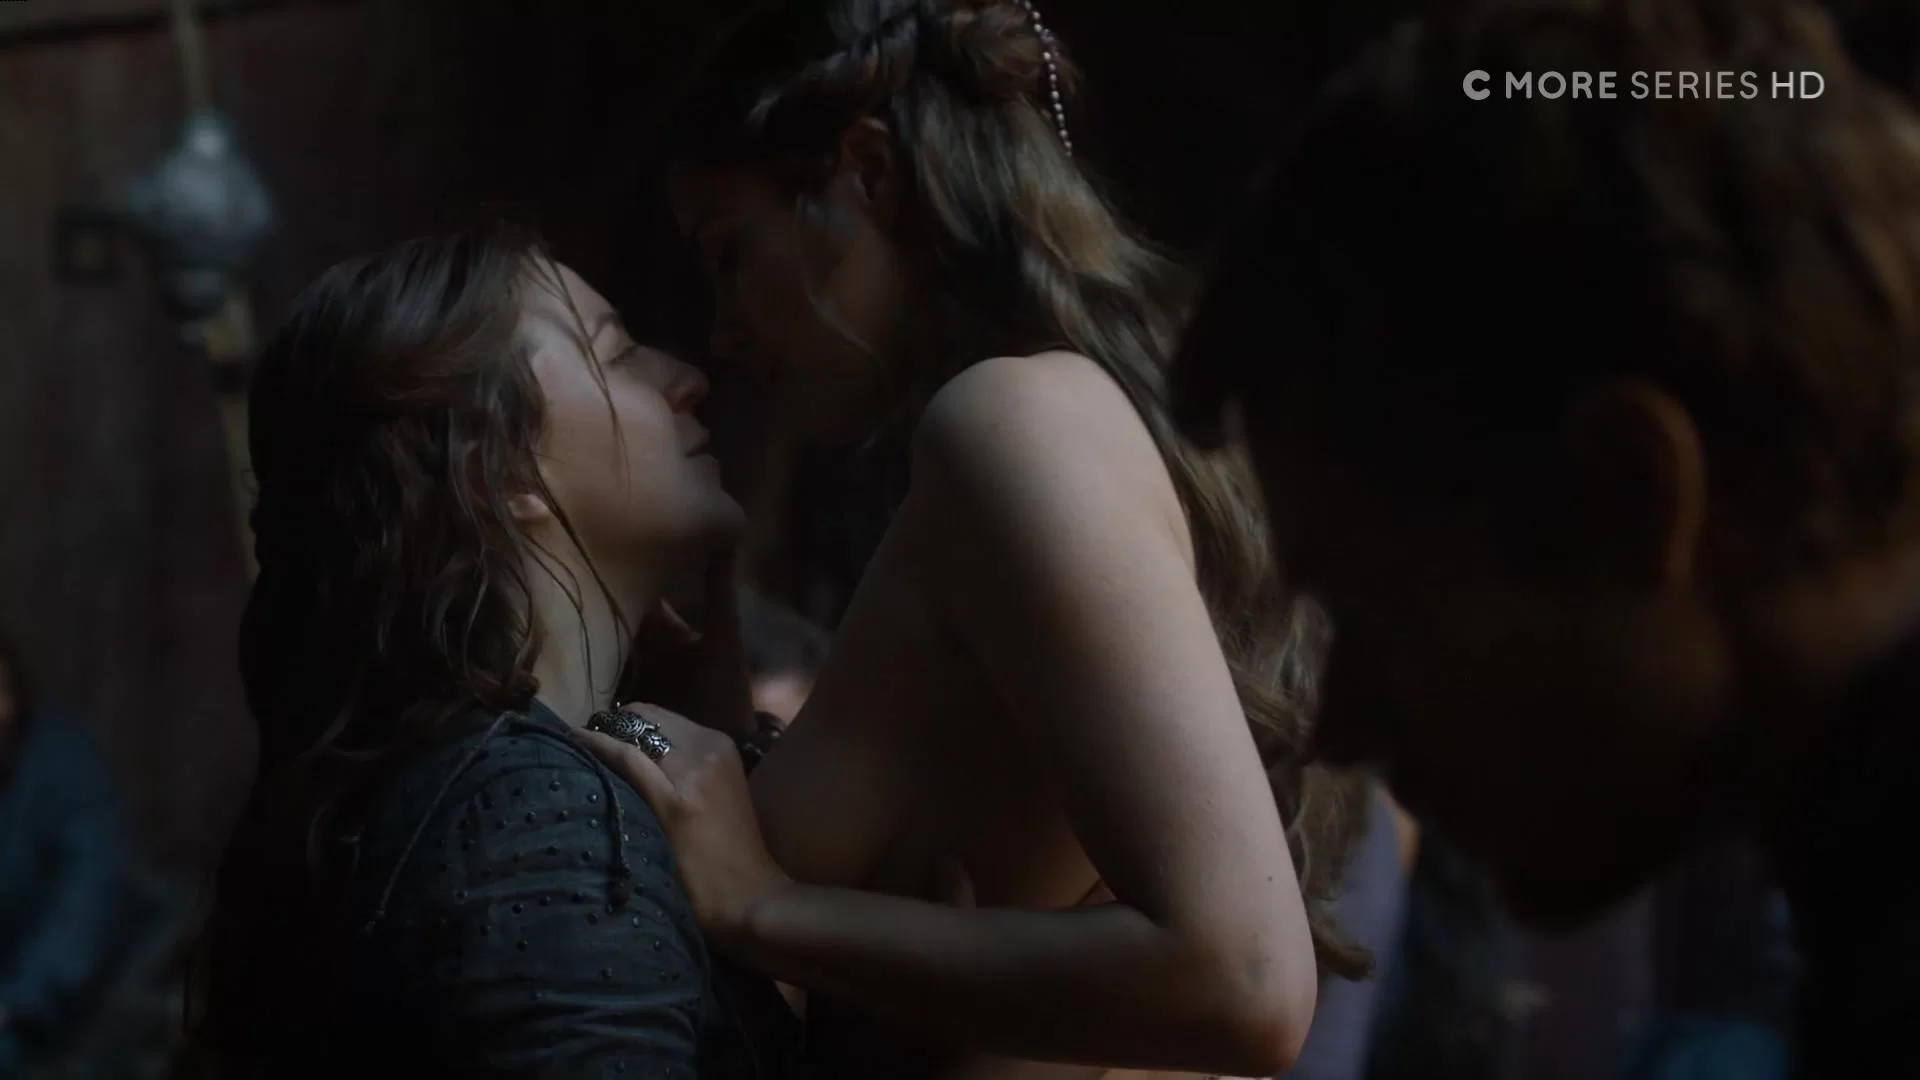 Ella Hughes, Heidi Romanova - Game of Thrones S06E07 (2016) Full HD 1080 ( Nude) most realistic sex scenes - Celebs Roulette Tube